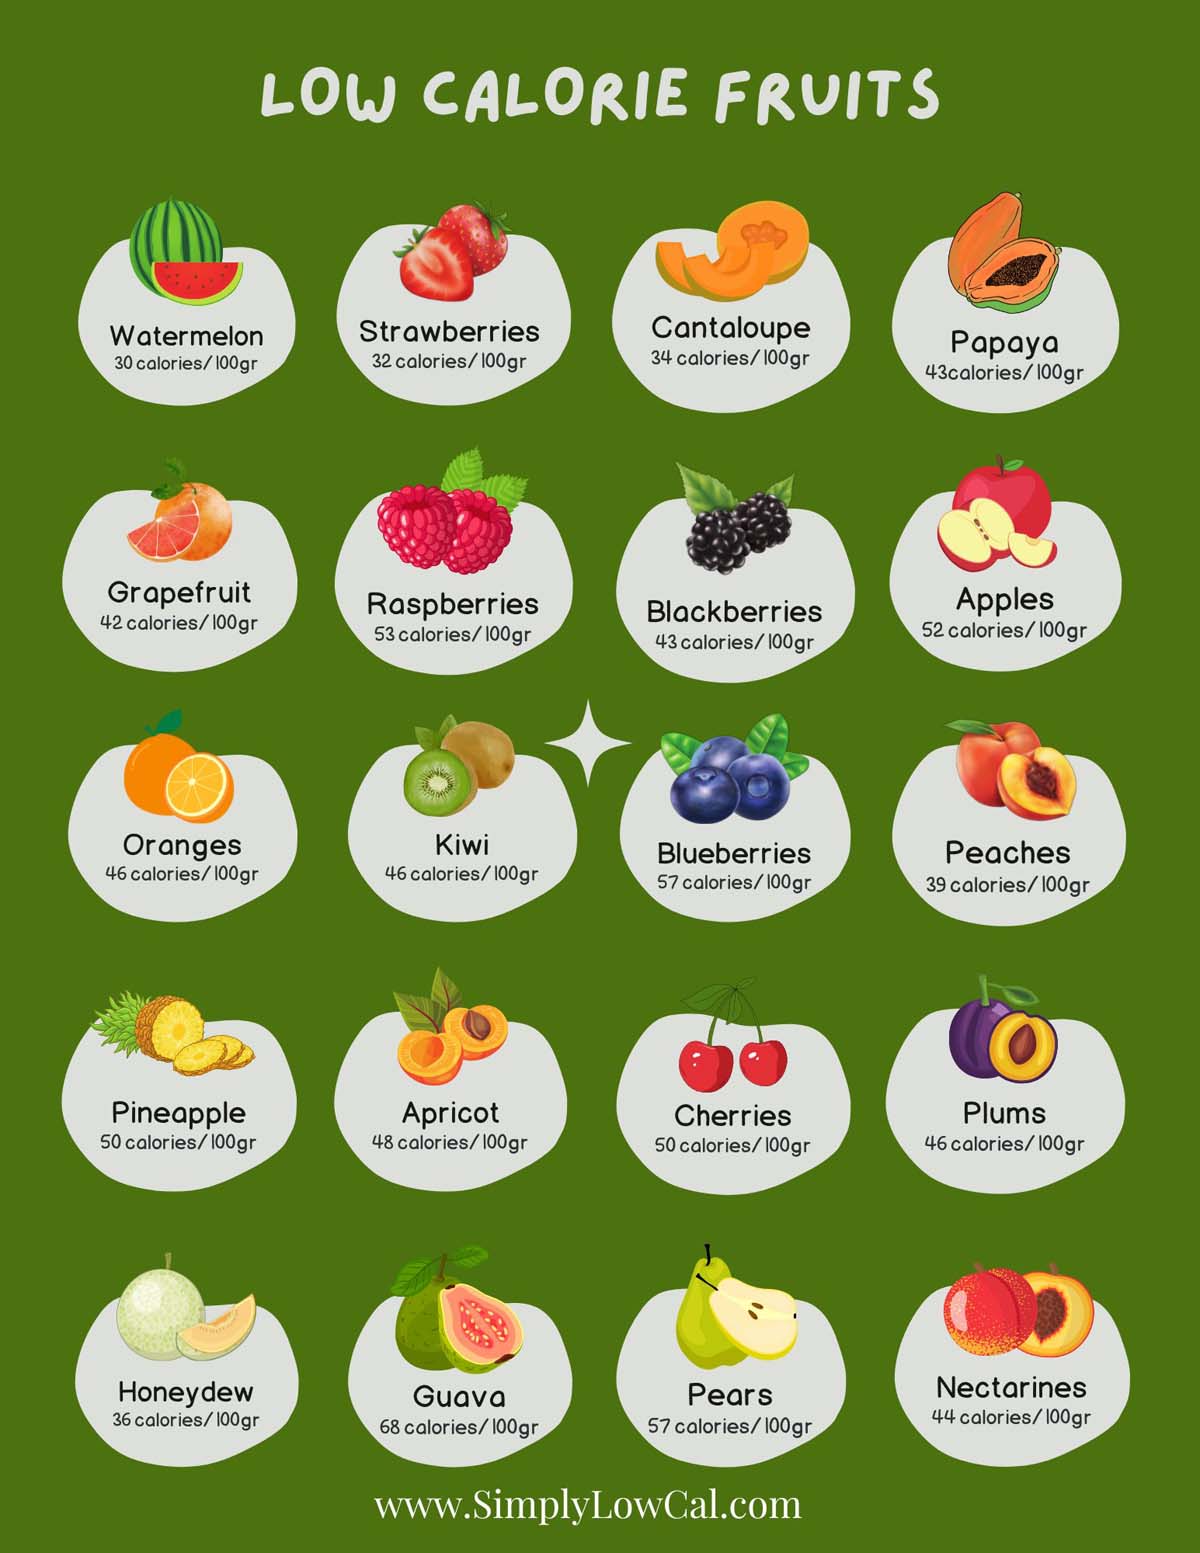 Low calorie fruit guide.